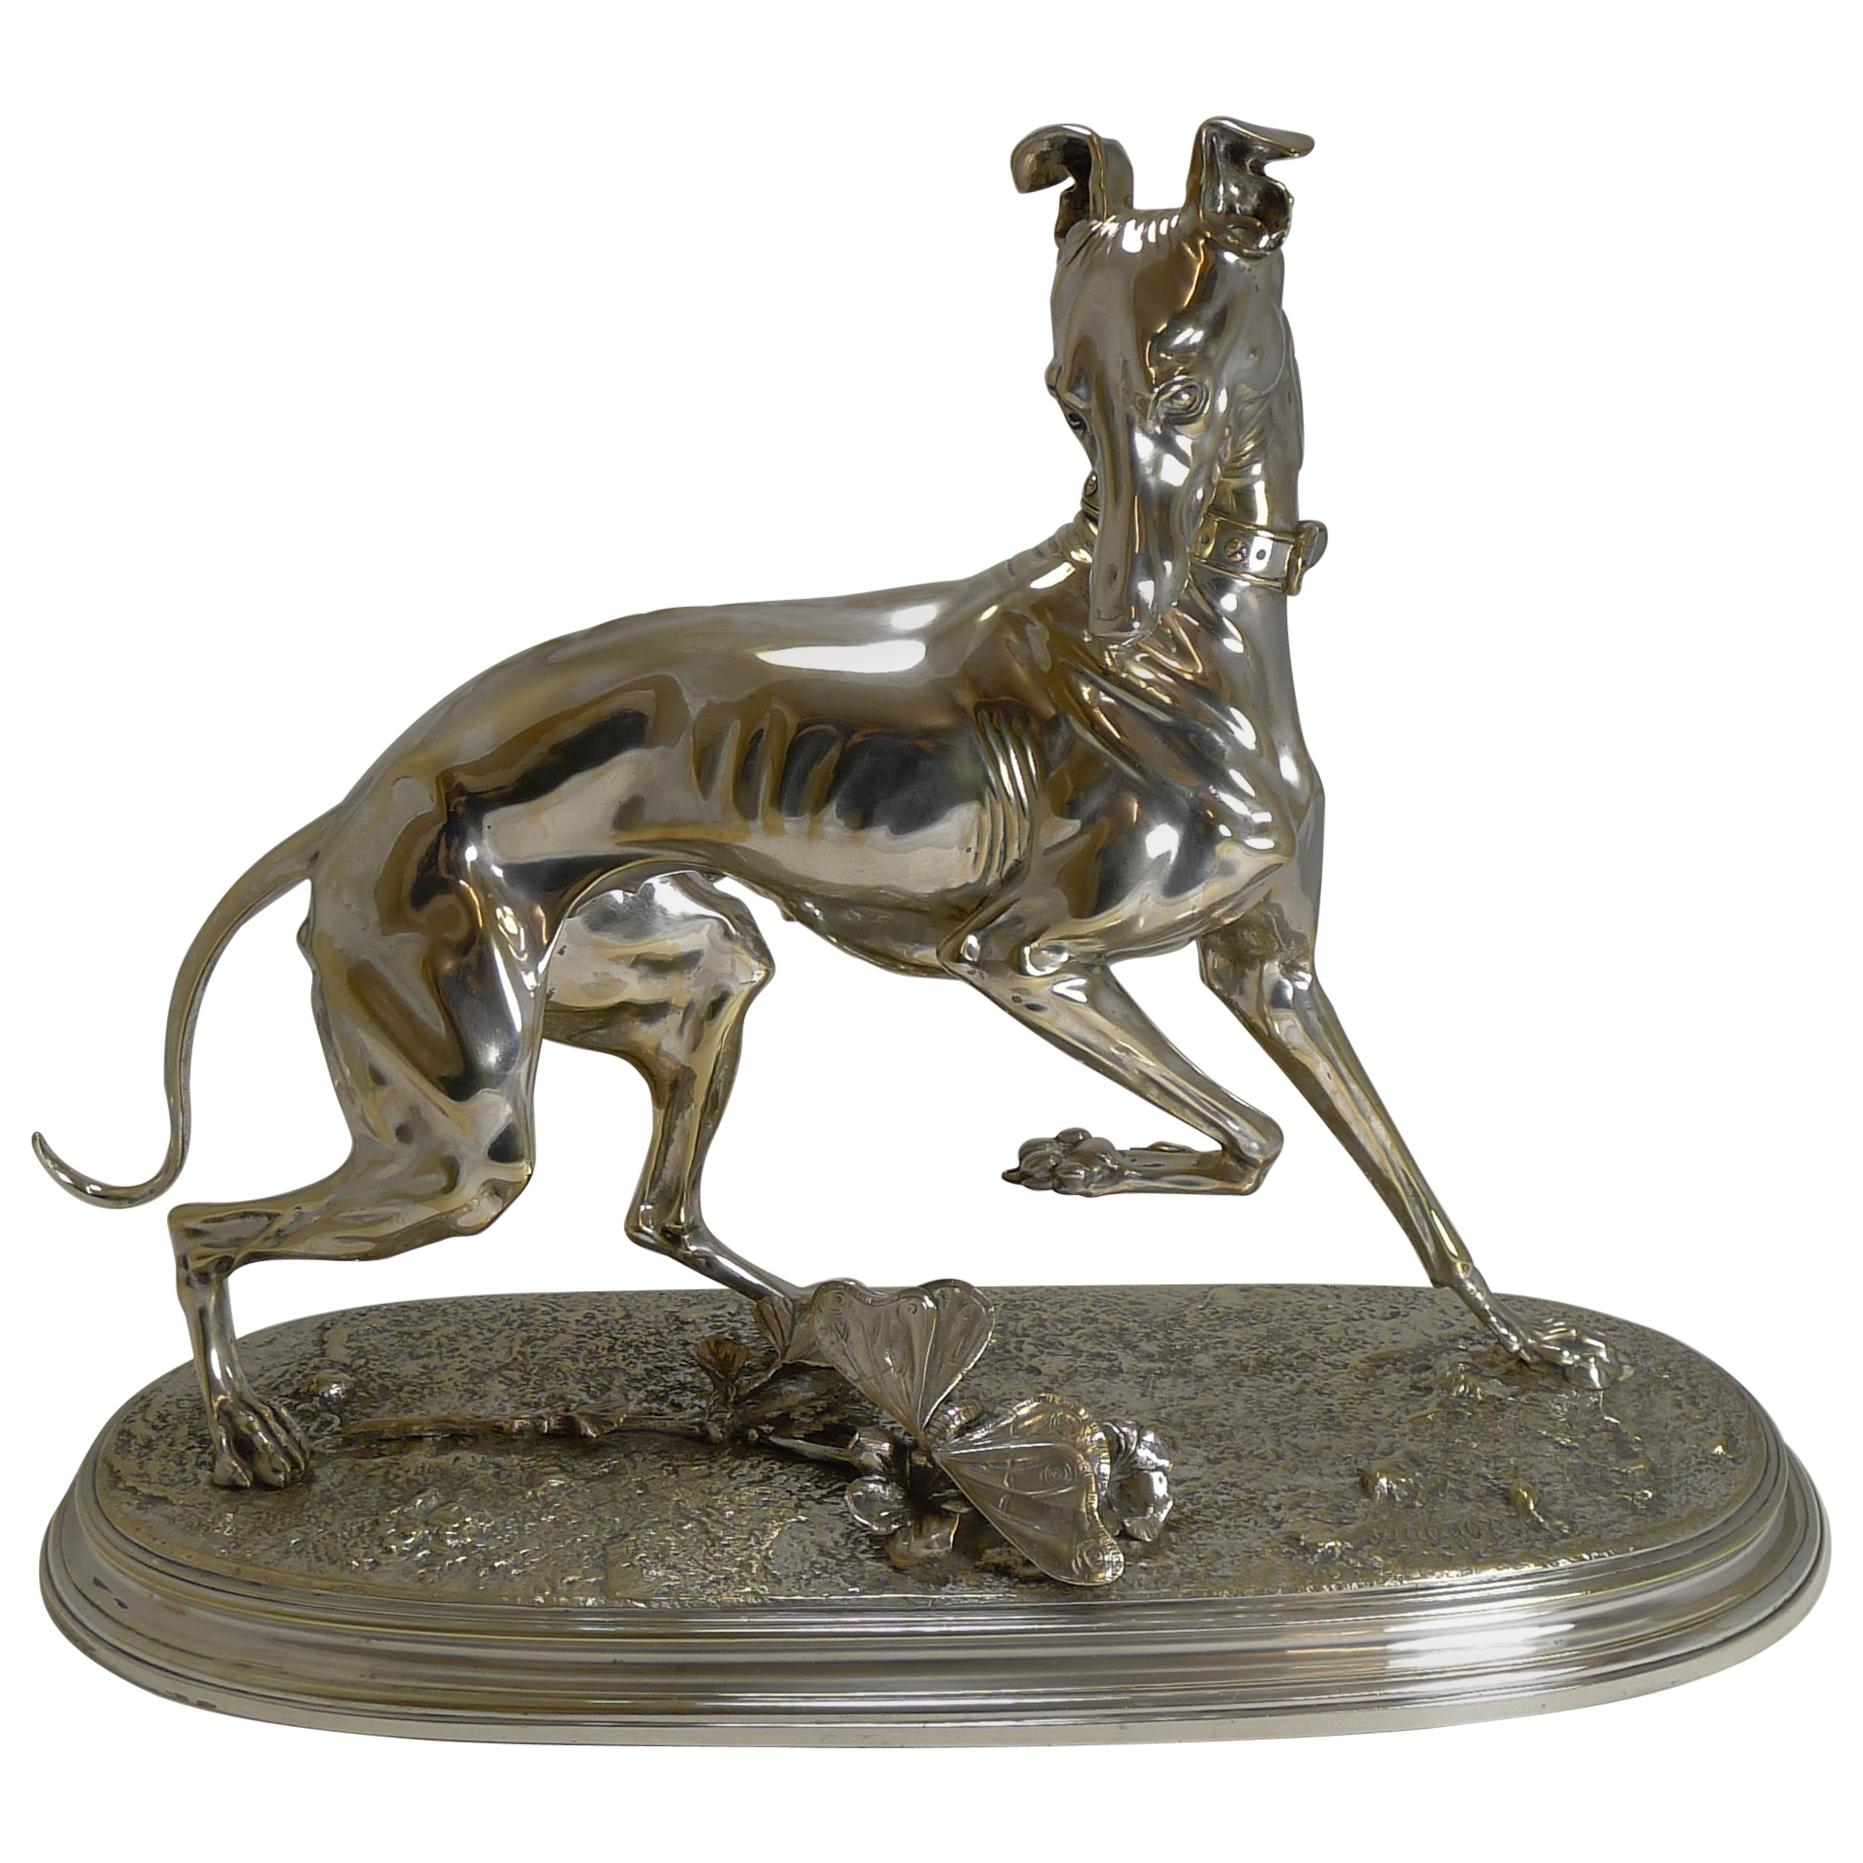 After Arthur Waagen Silver on Bronze Sculpture, Whippet Greyhound